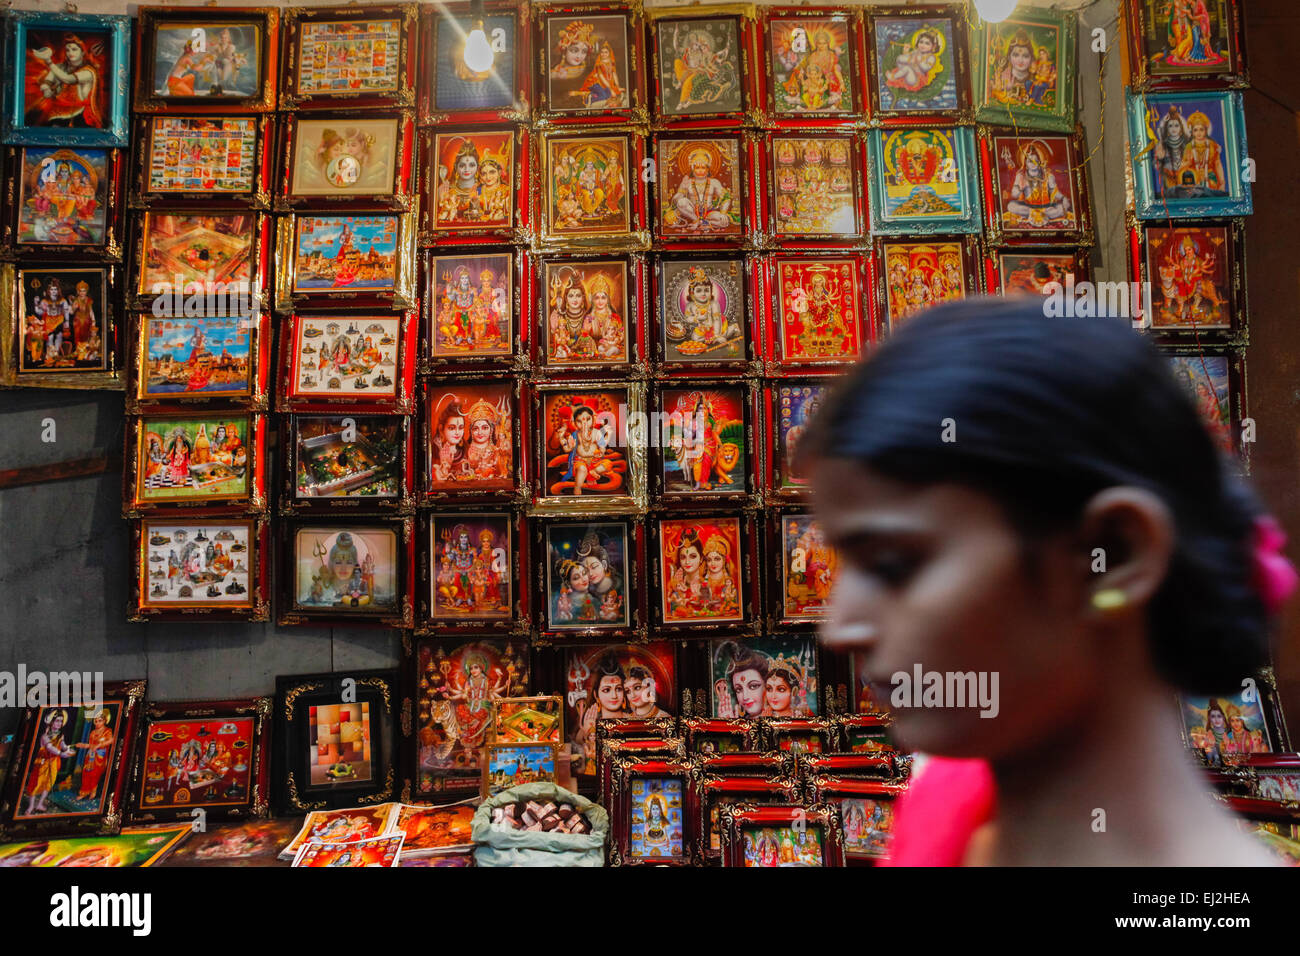 La donna passa davanti al negozio di immagini dei in uno dei vicoli di Varanasi, India. Foto Stock